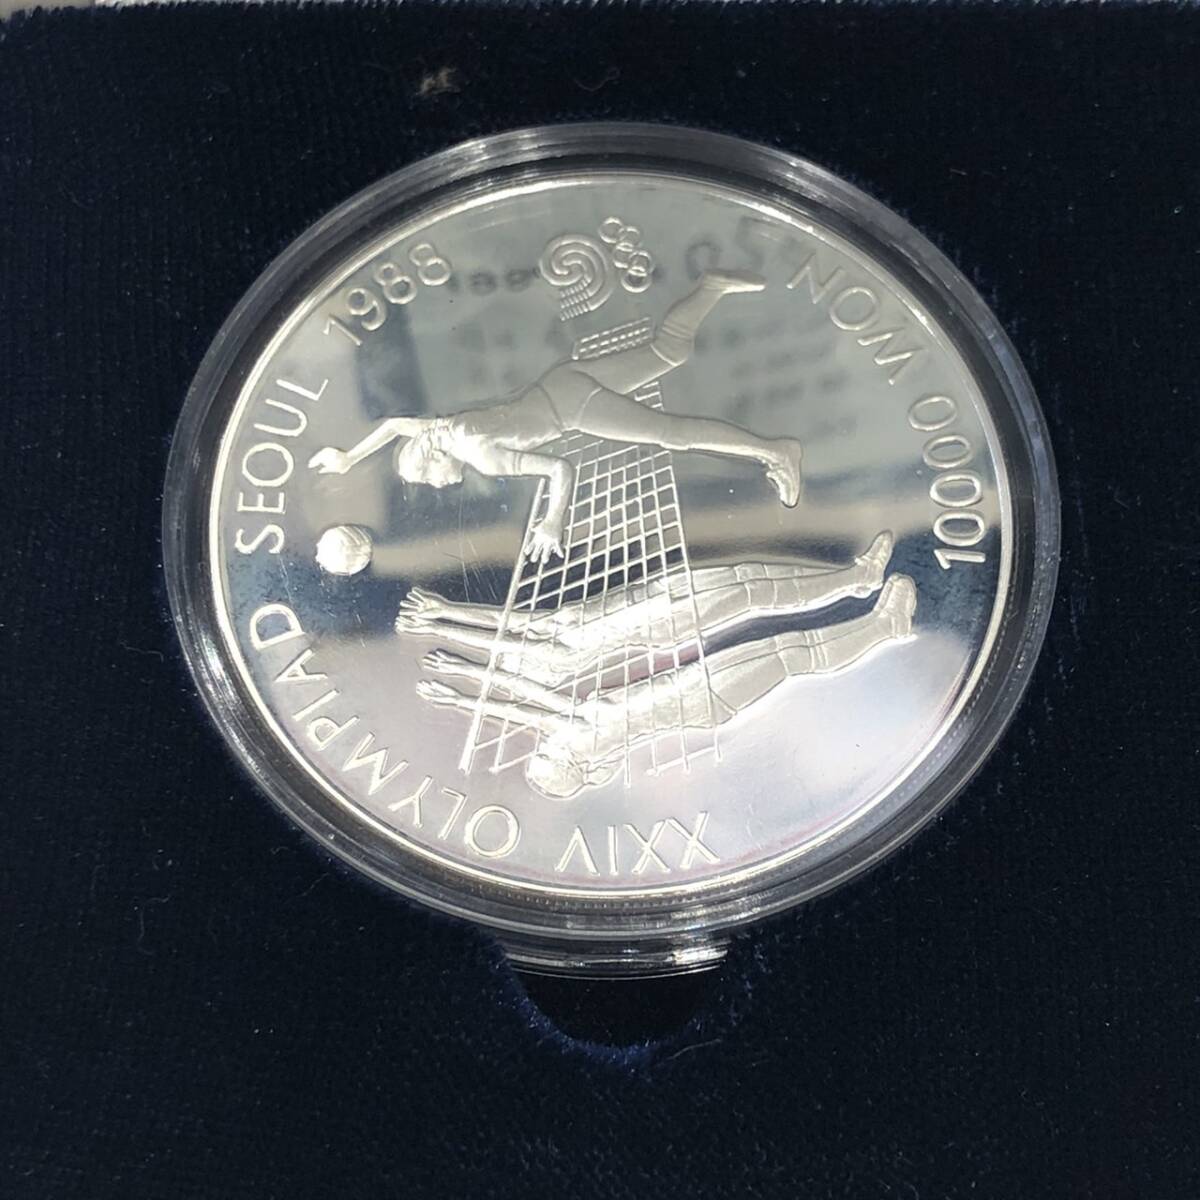 ソウルオリンピック 1988 記念コイン 10000ウォン 5000ウォン 2000ウォン 1000ウォン 銀貨 硬貨 シルバー ニッケル ケース付きの画像3